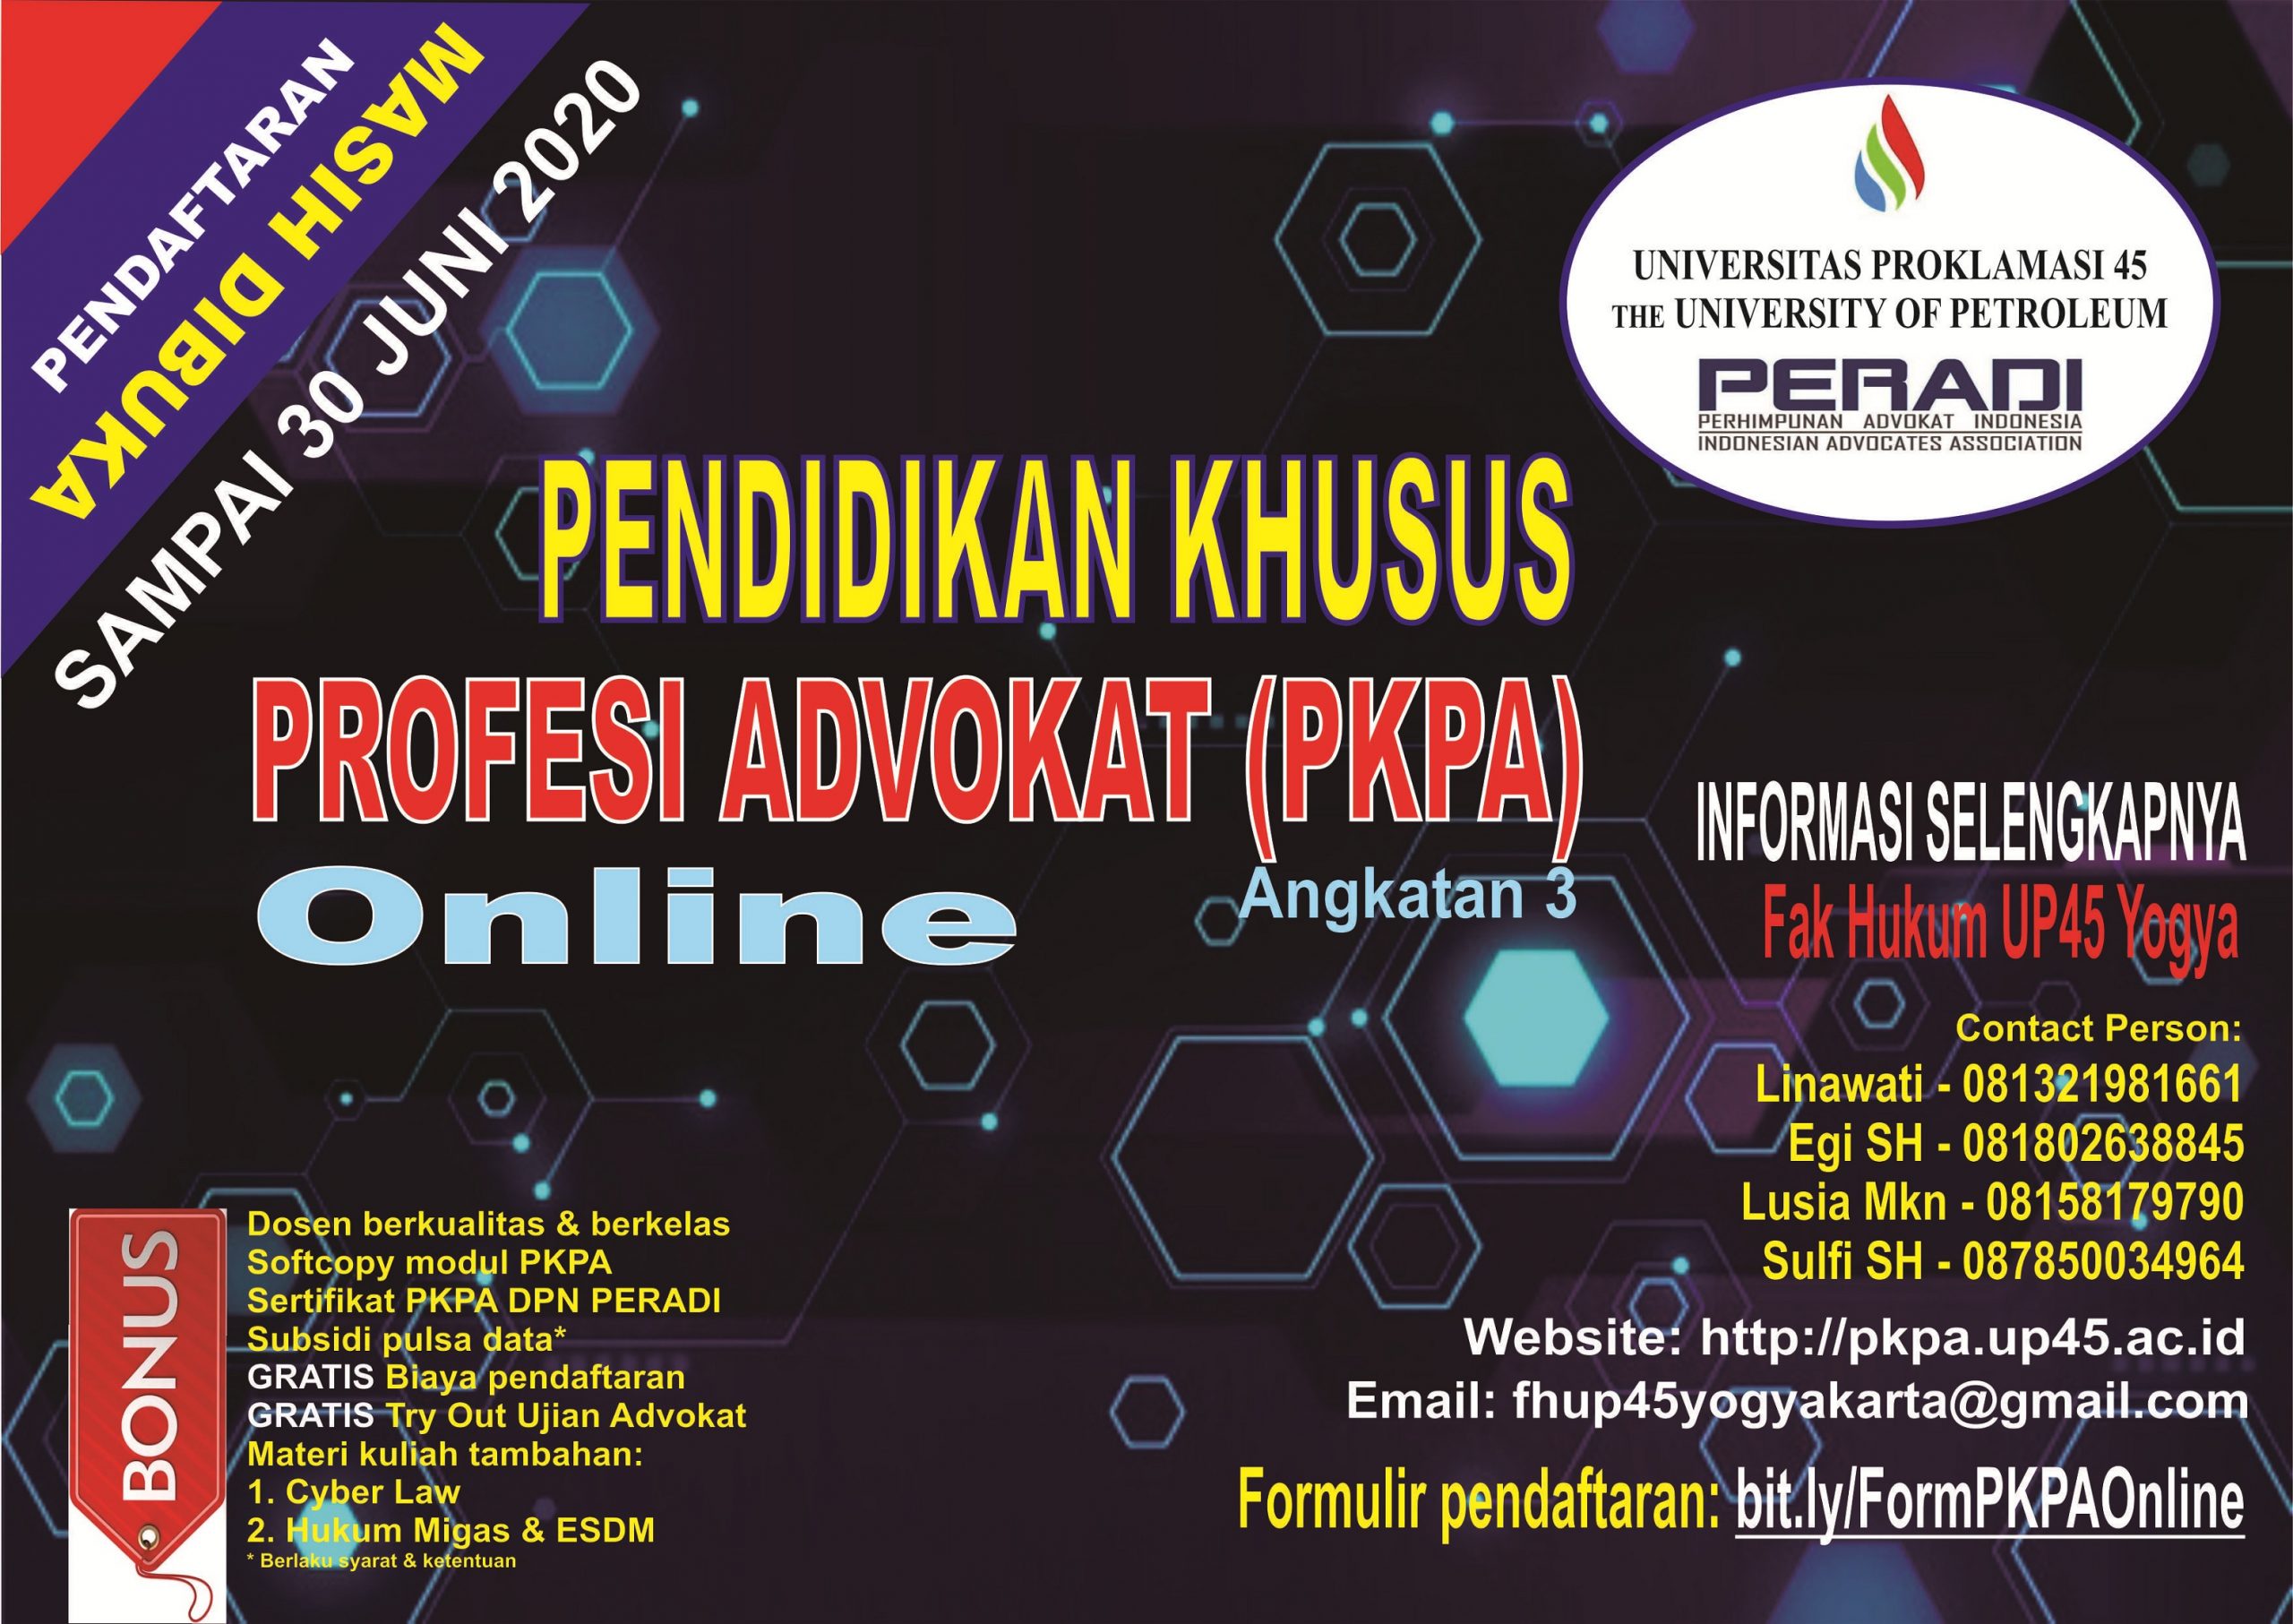 PKPA Online Kerjasama FH UP45 Yogya dan PERADI